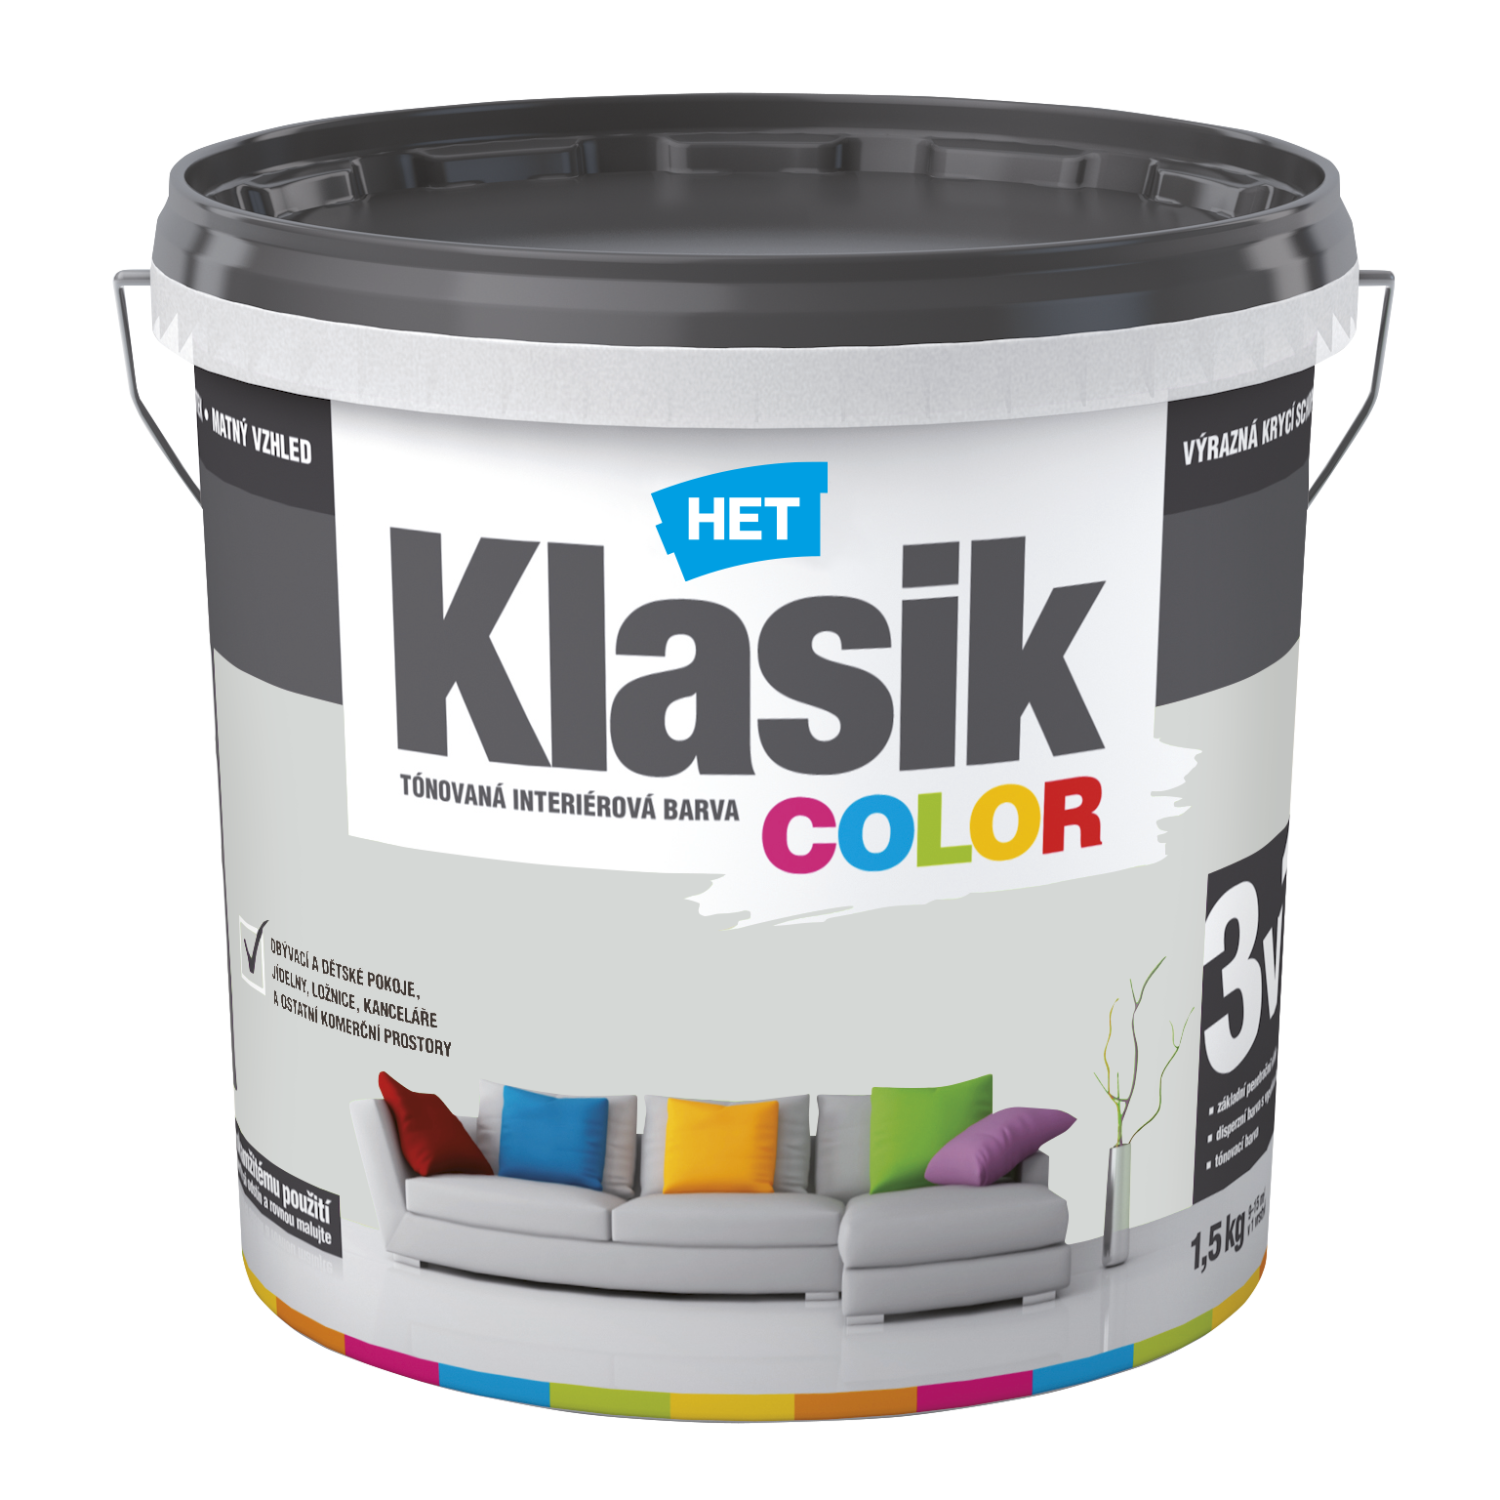 HET Klasik COLOR tónovaná interiérová akrylátová disperzná oteruvzdorná farba 1,5 kg, KC0117 - šedý platinový